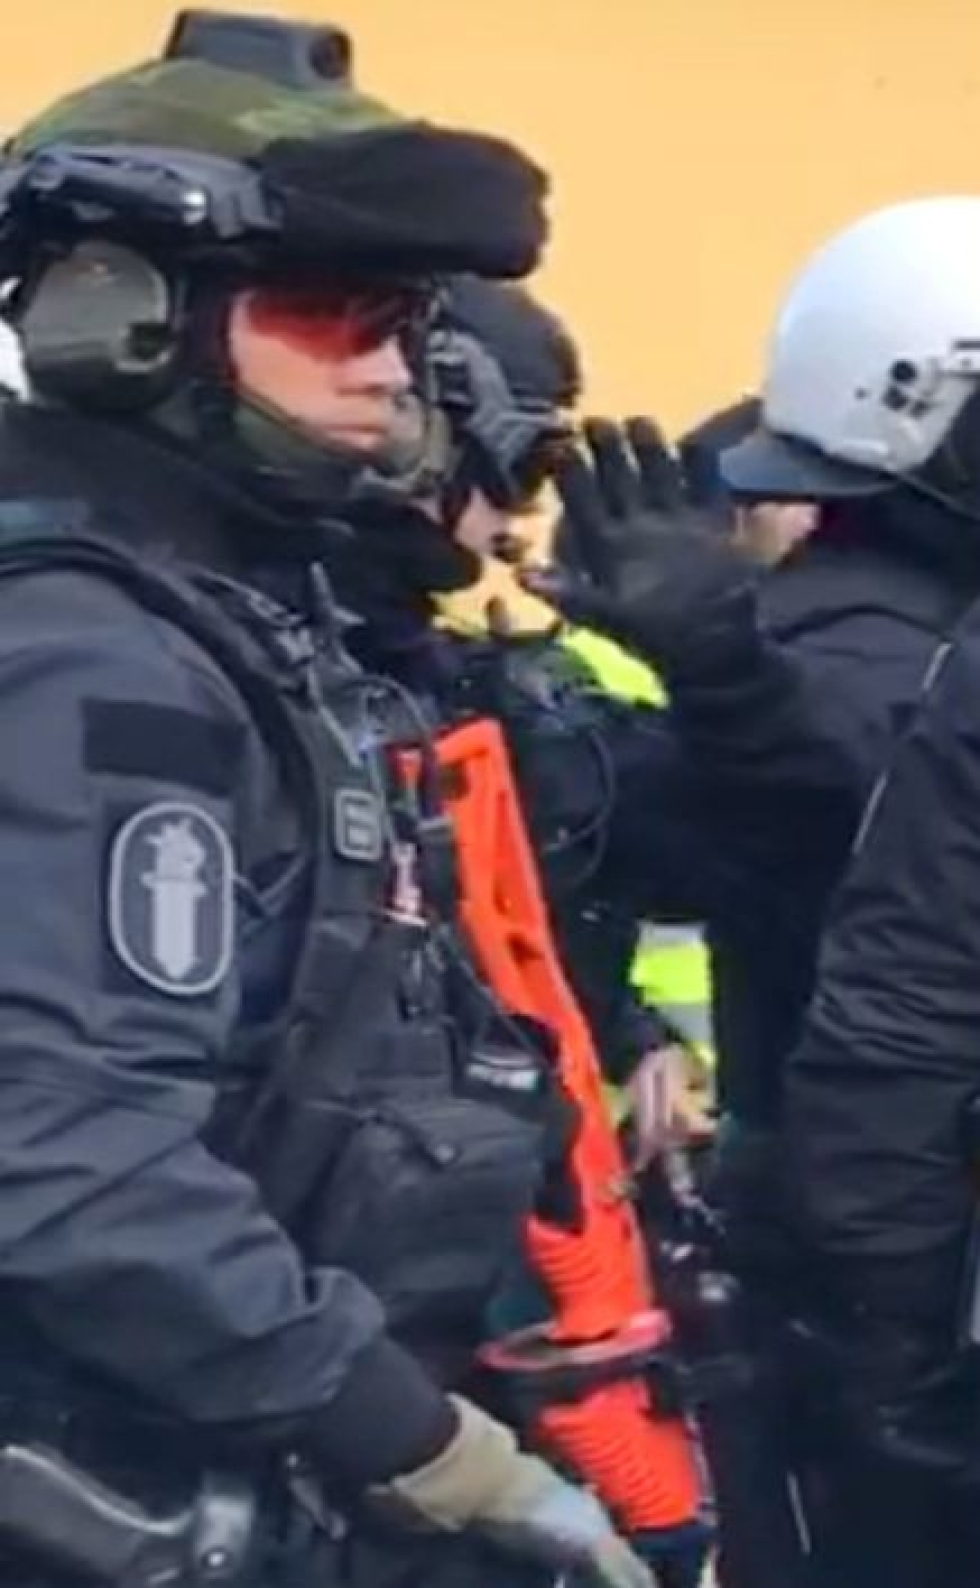 Poliisi varustautuneena projektiiliaseella eli paineilma-aseella lauantain Turkki-mielenosoituksessa Narinkkatorilla Helsingissä. Kuvakaappaus STT:n haltuunsa saamalta videolta. LEHTIKUVA/HANDOUT